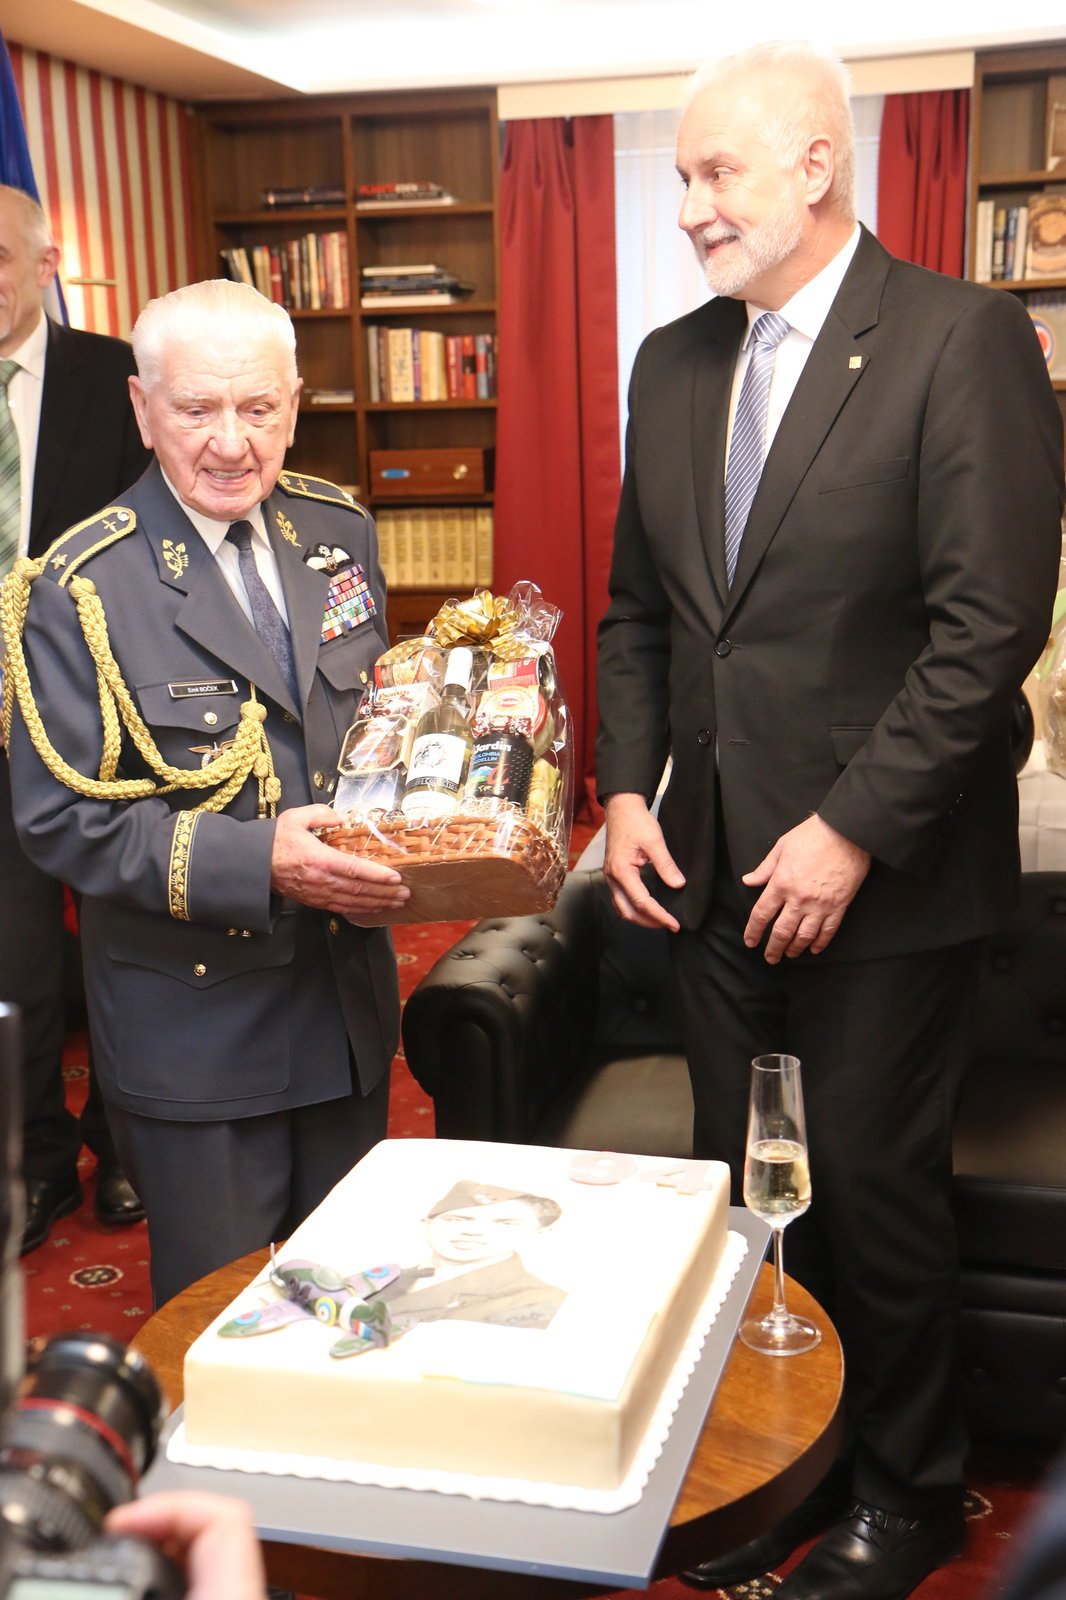 Hejtman Jihomoravského kraje Bohumil Šimek patřil mezi nejvyšší gratulanty generálu Emilu Bočkovi u jeho oslav 94. narozenin.